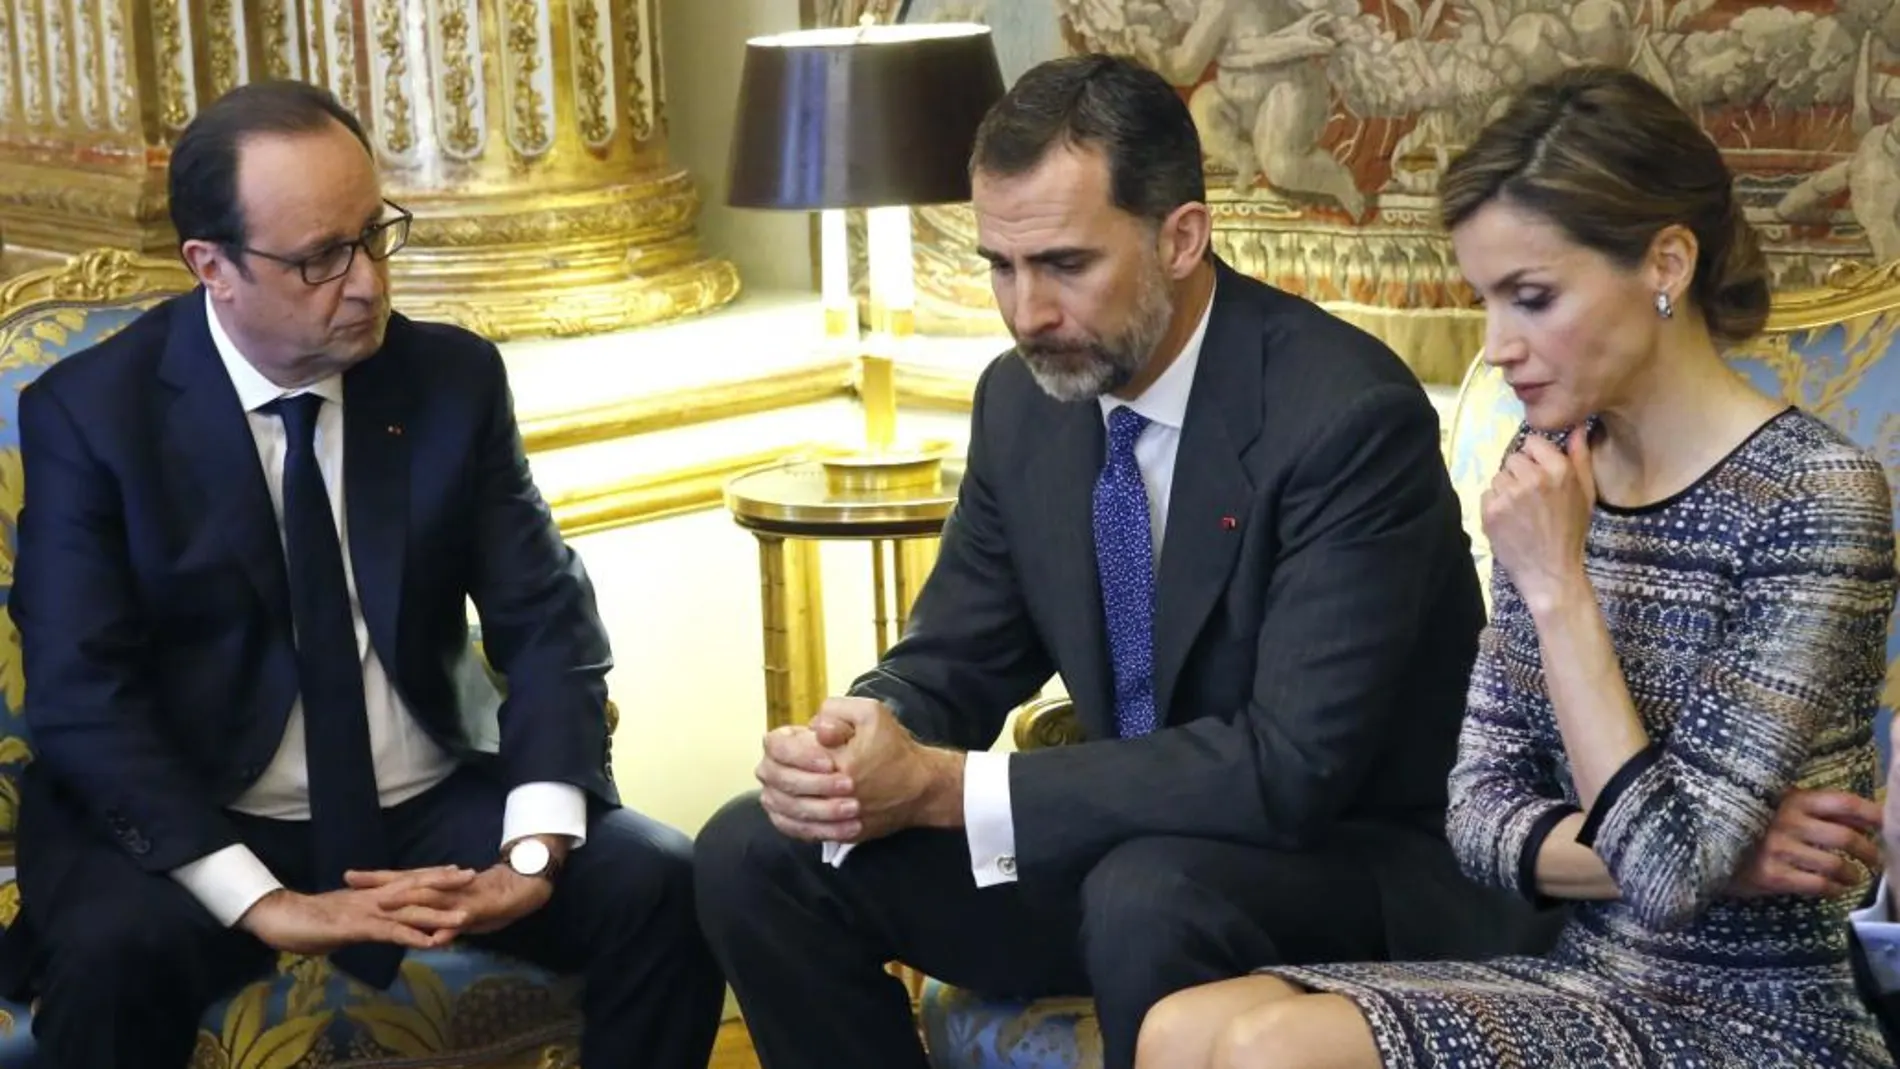 Los Reyes de España durante la reunión que mantuvieron hoy en el Palacio del Elíseo con el presidente francés François Hollande tras su llegada a París